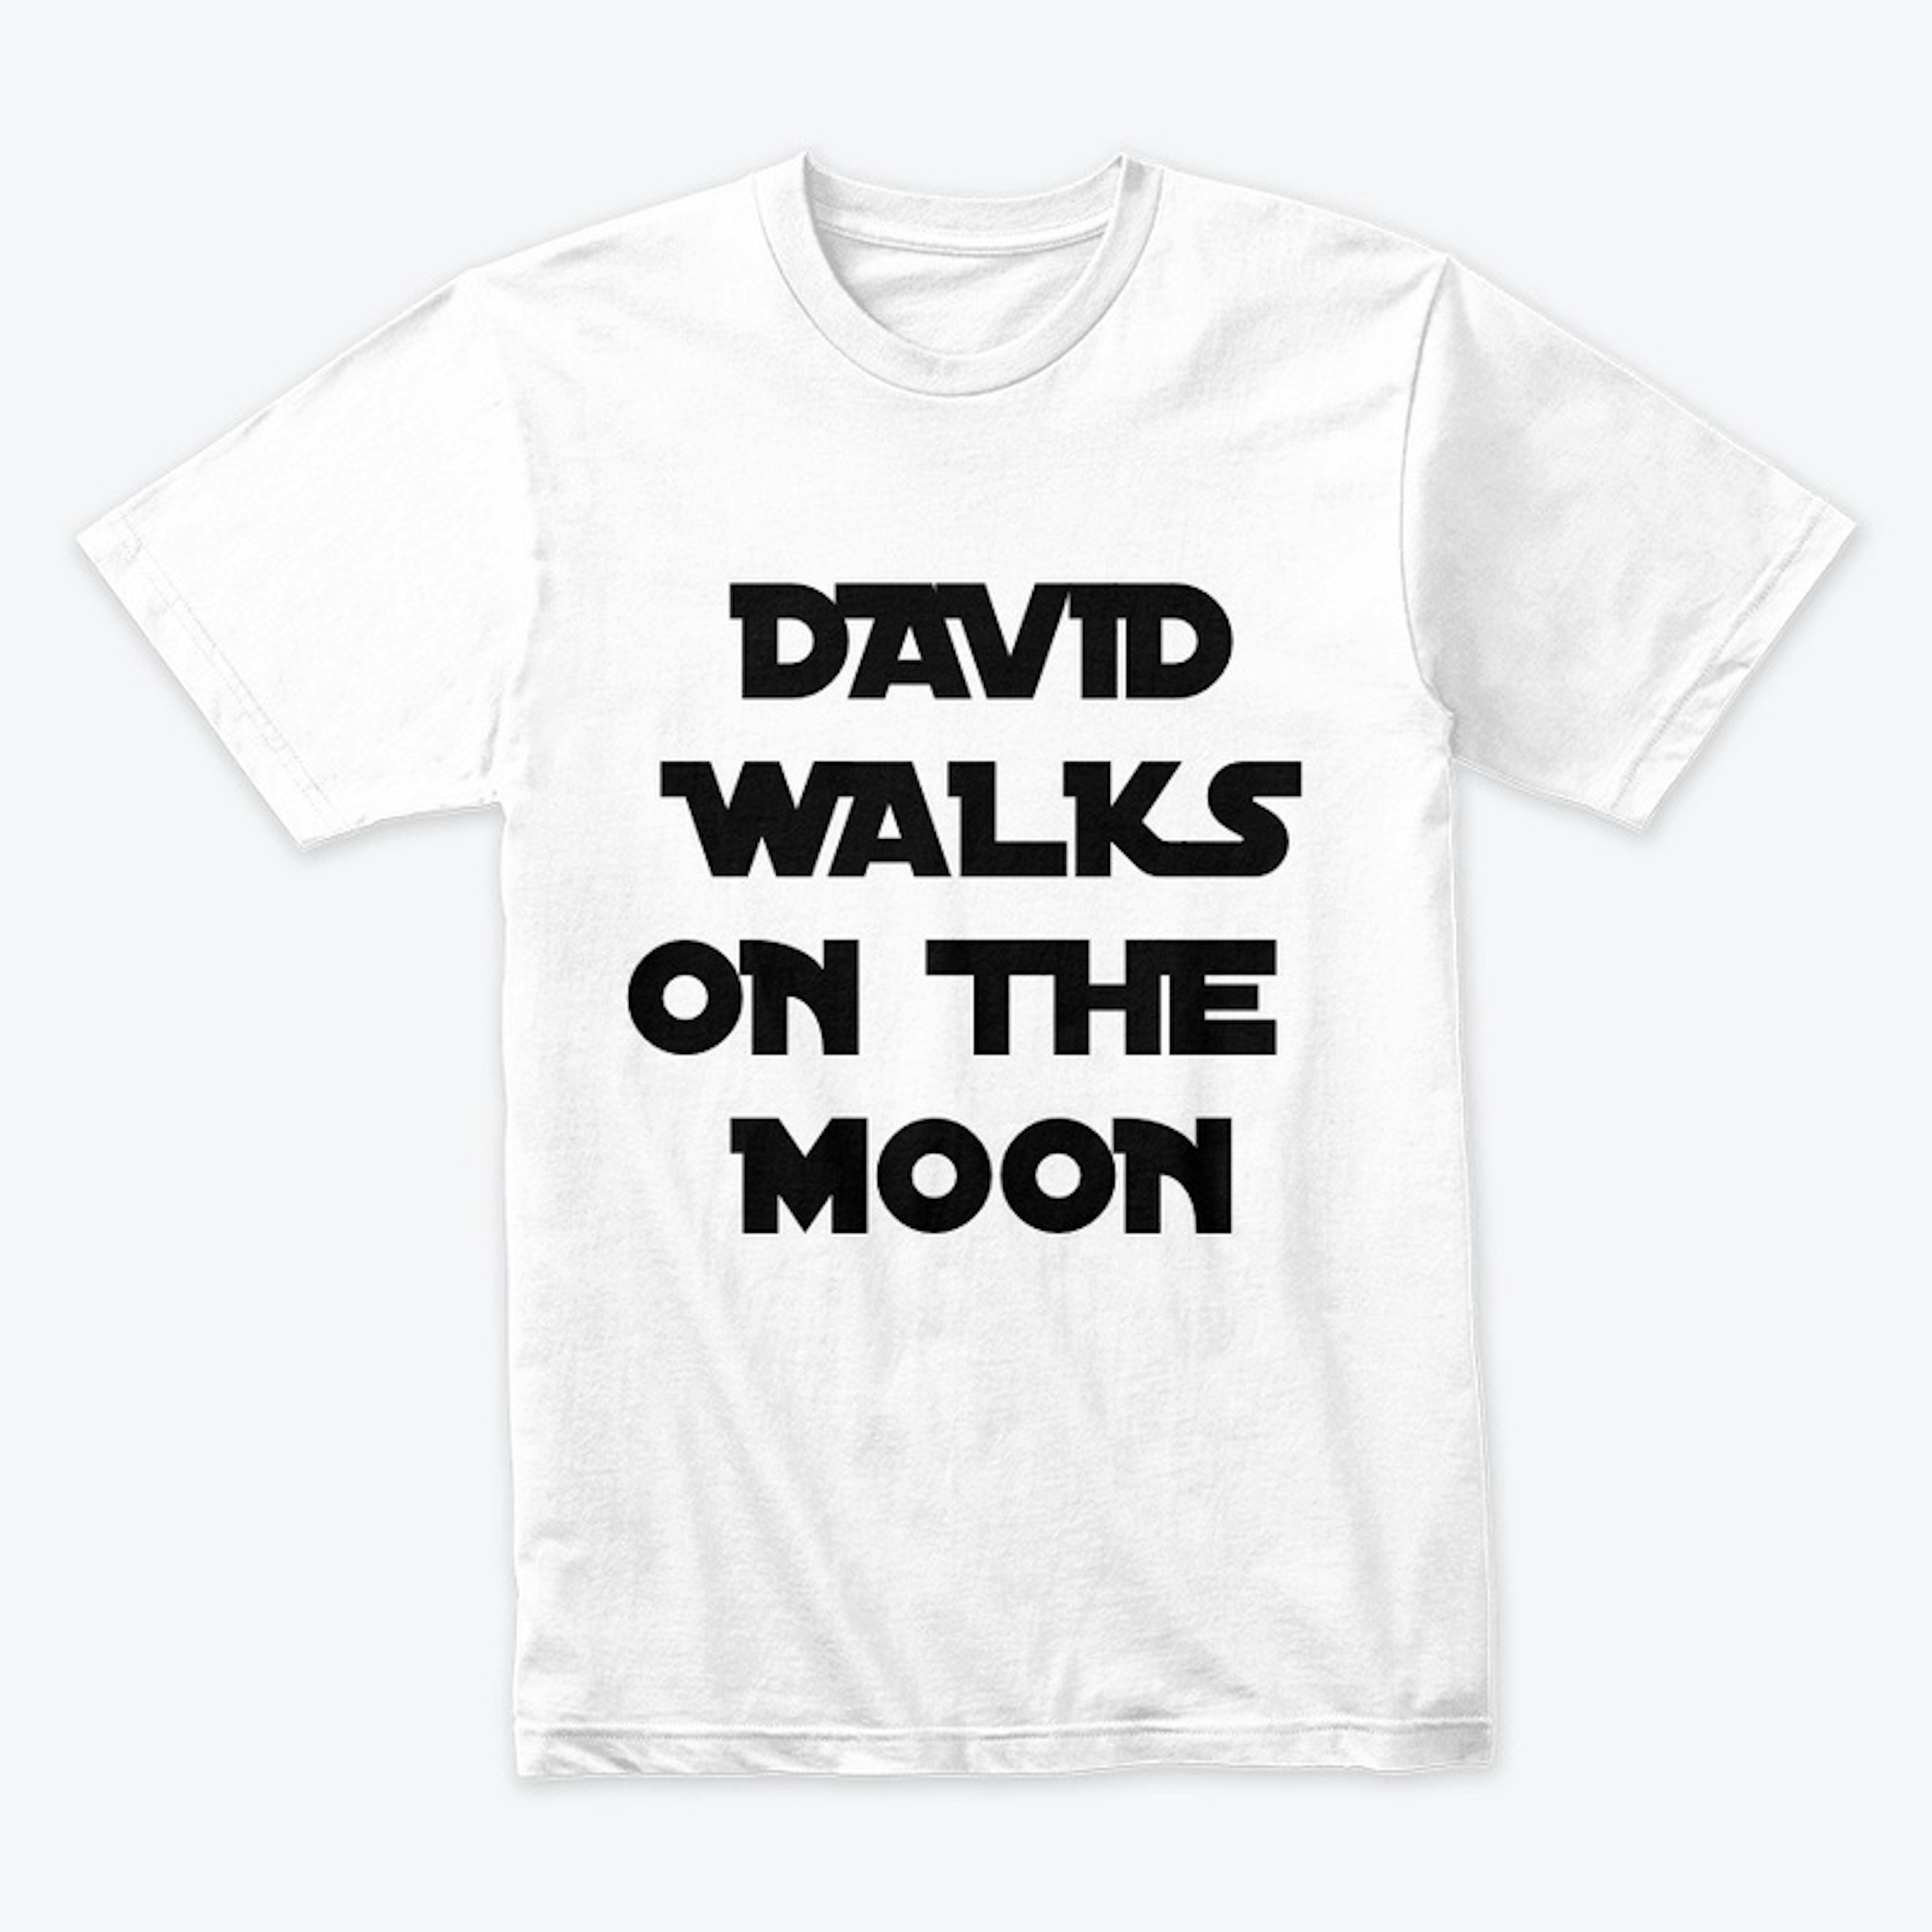 David Walks on the Moon